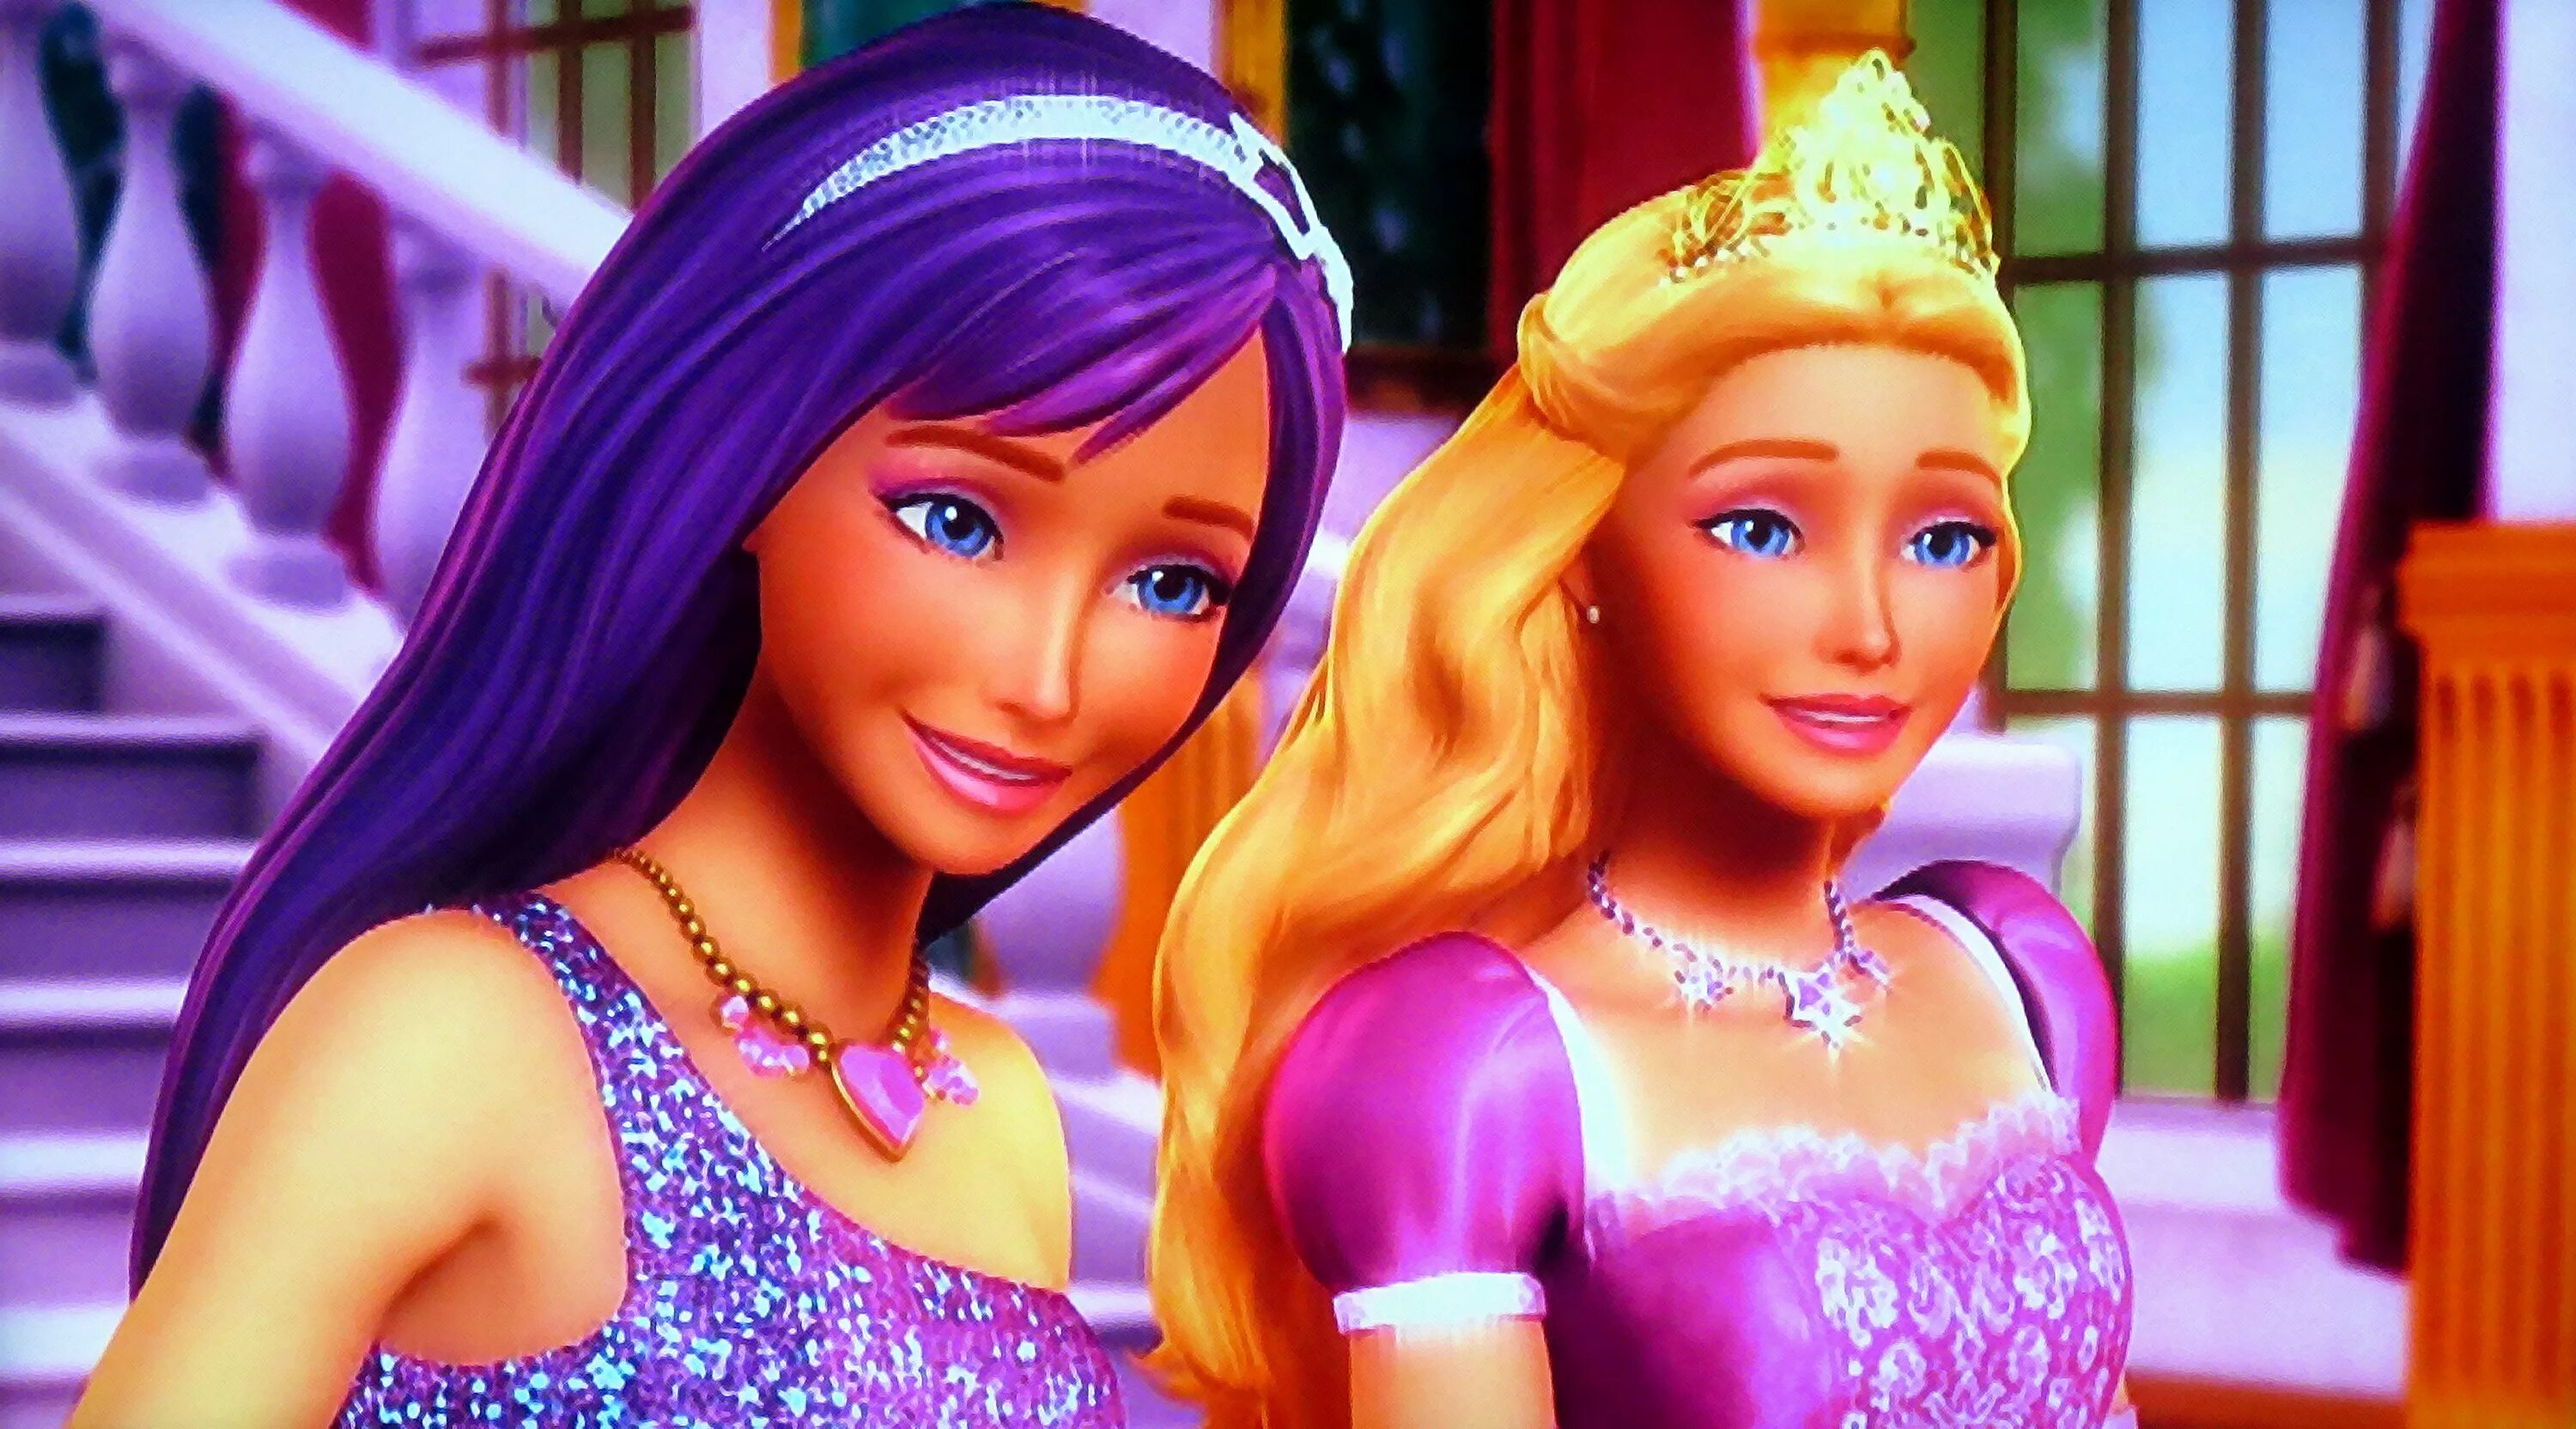 Принцесса и поп звезда. Барби принцесса и поп-звезда мультфильм. Барби: принцесса и поп-звезда (2012). Барби Кейра и Тори. Барби и поп звезда мультик.